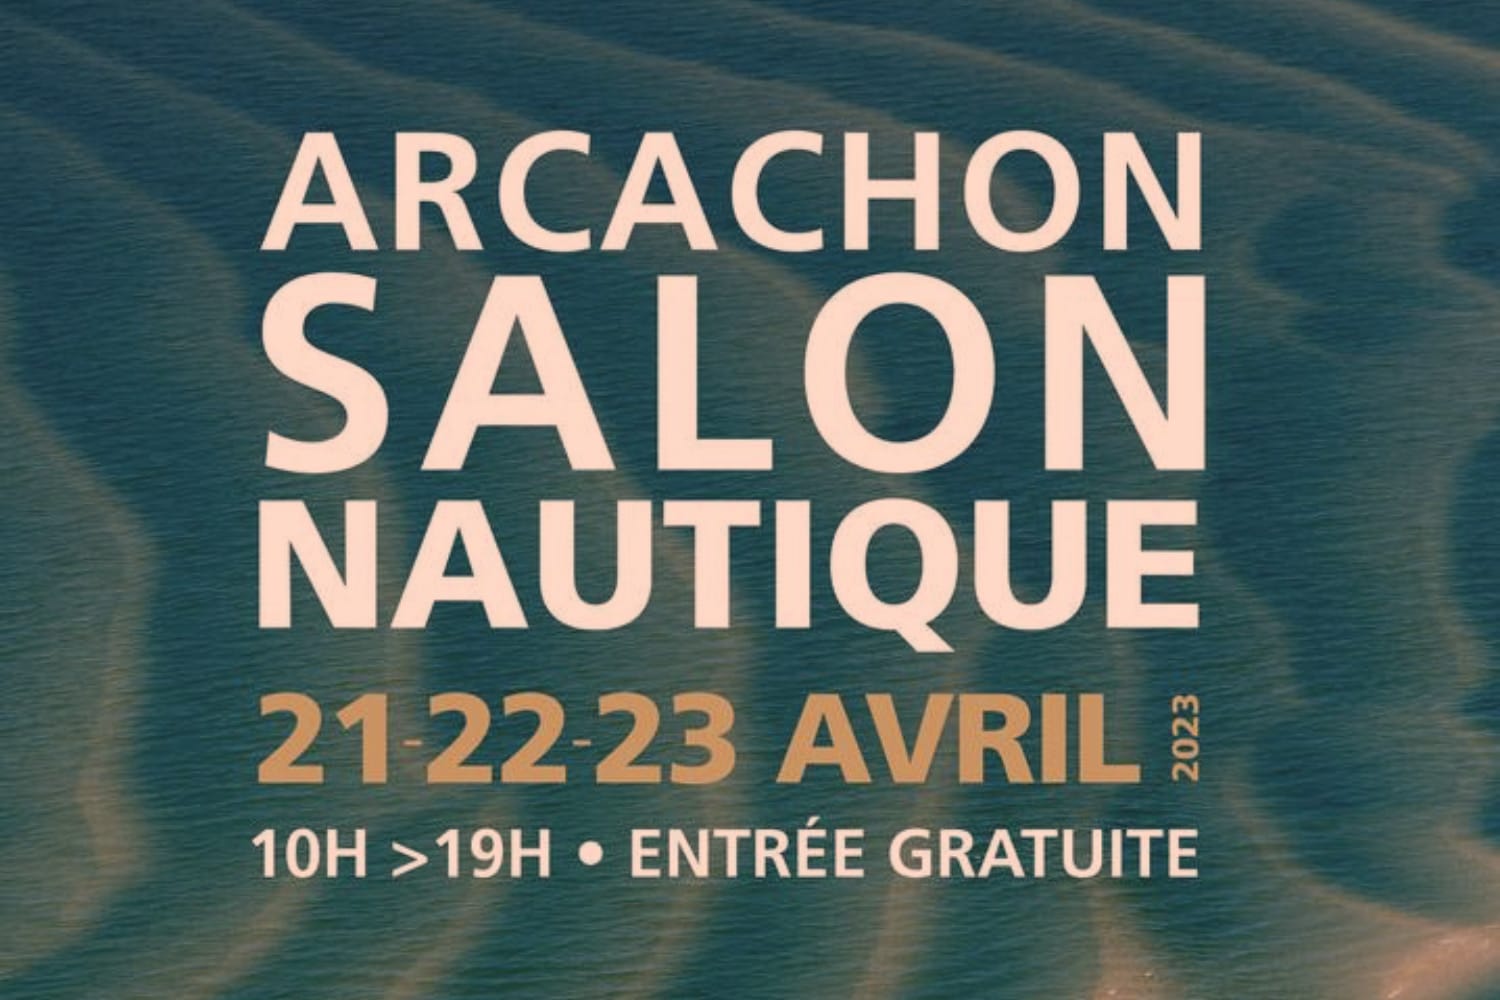 Rendez-vous incontournable de la filière nautique, le Salon Nautique d'Arcachon s’adresse aussi bien aux visiteurs passionnés, aux curieux de passage qu’aux professionnels du nautisme et de la mer.